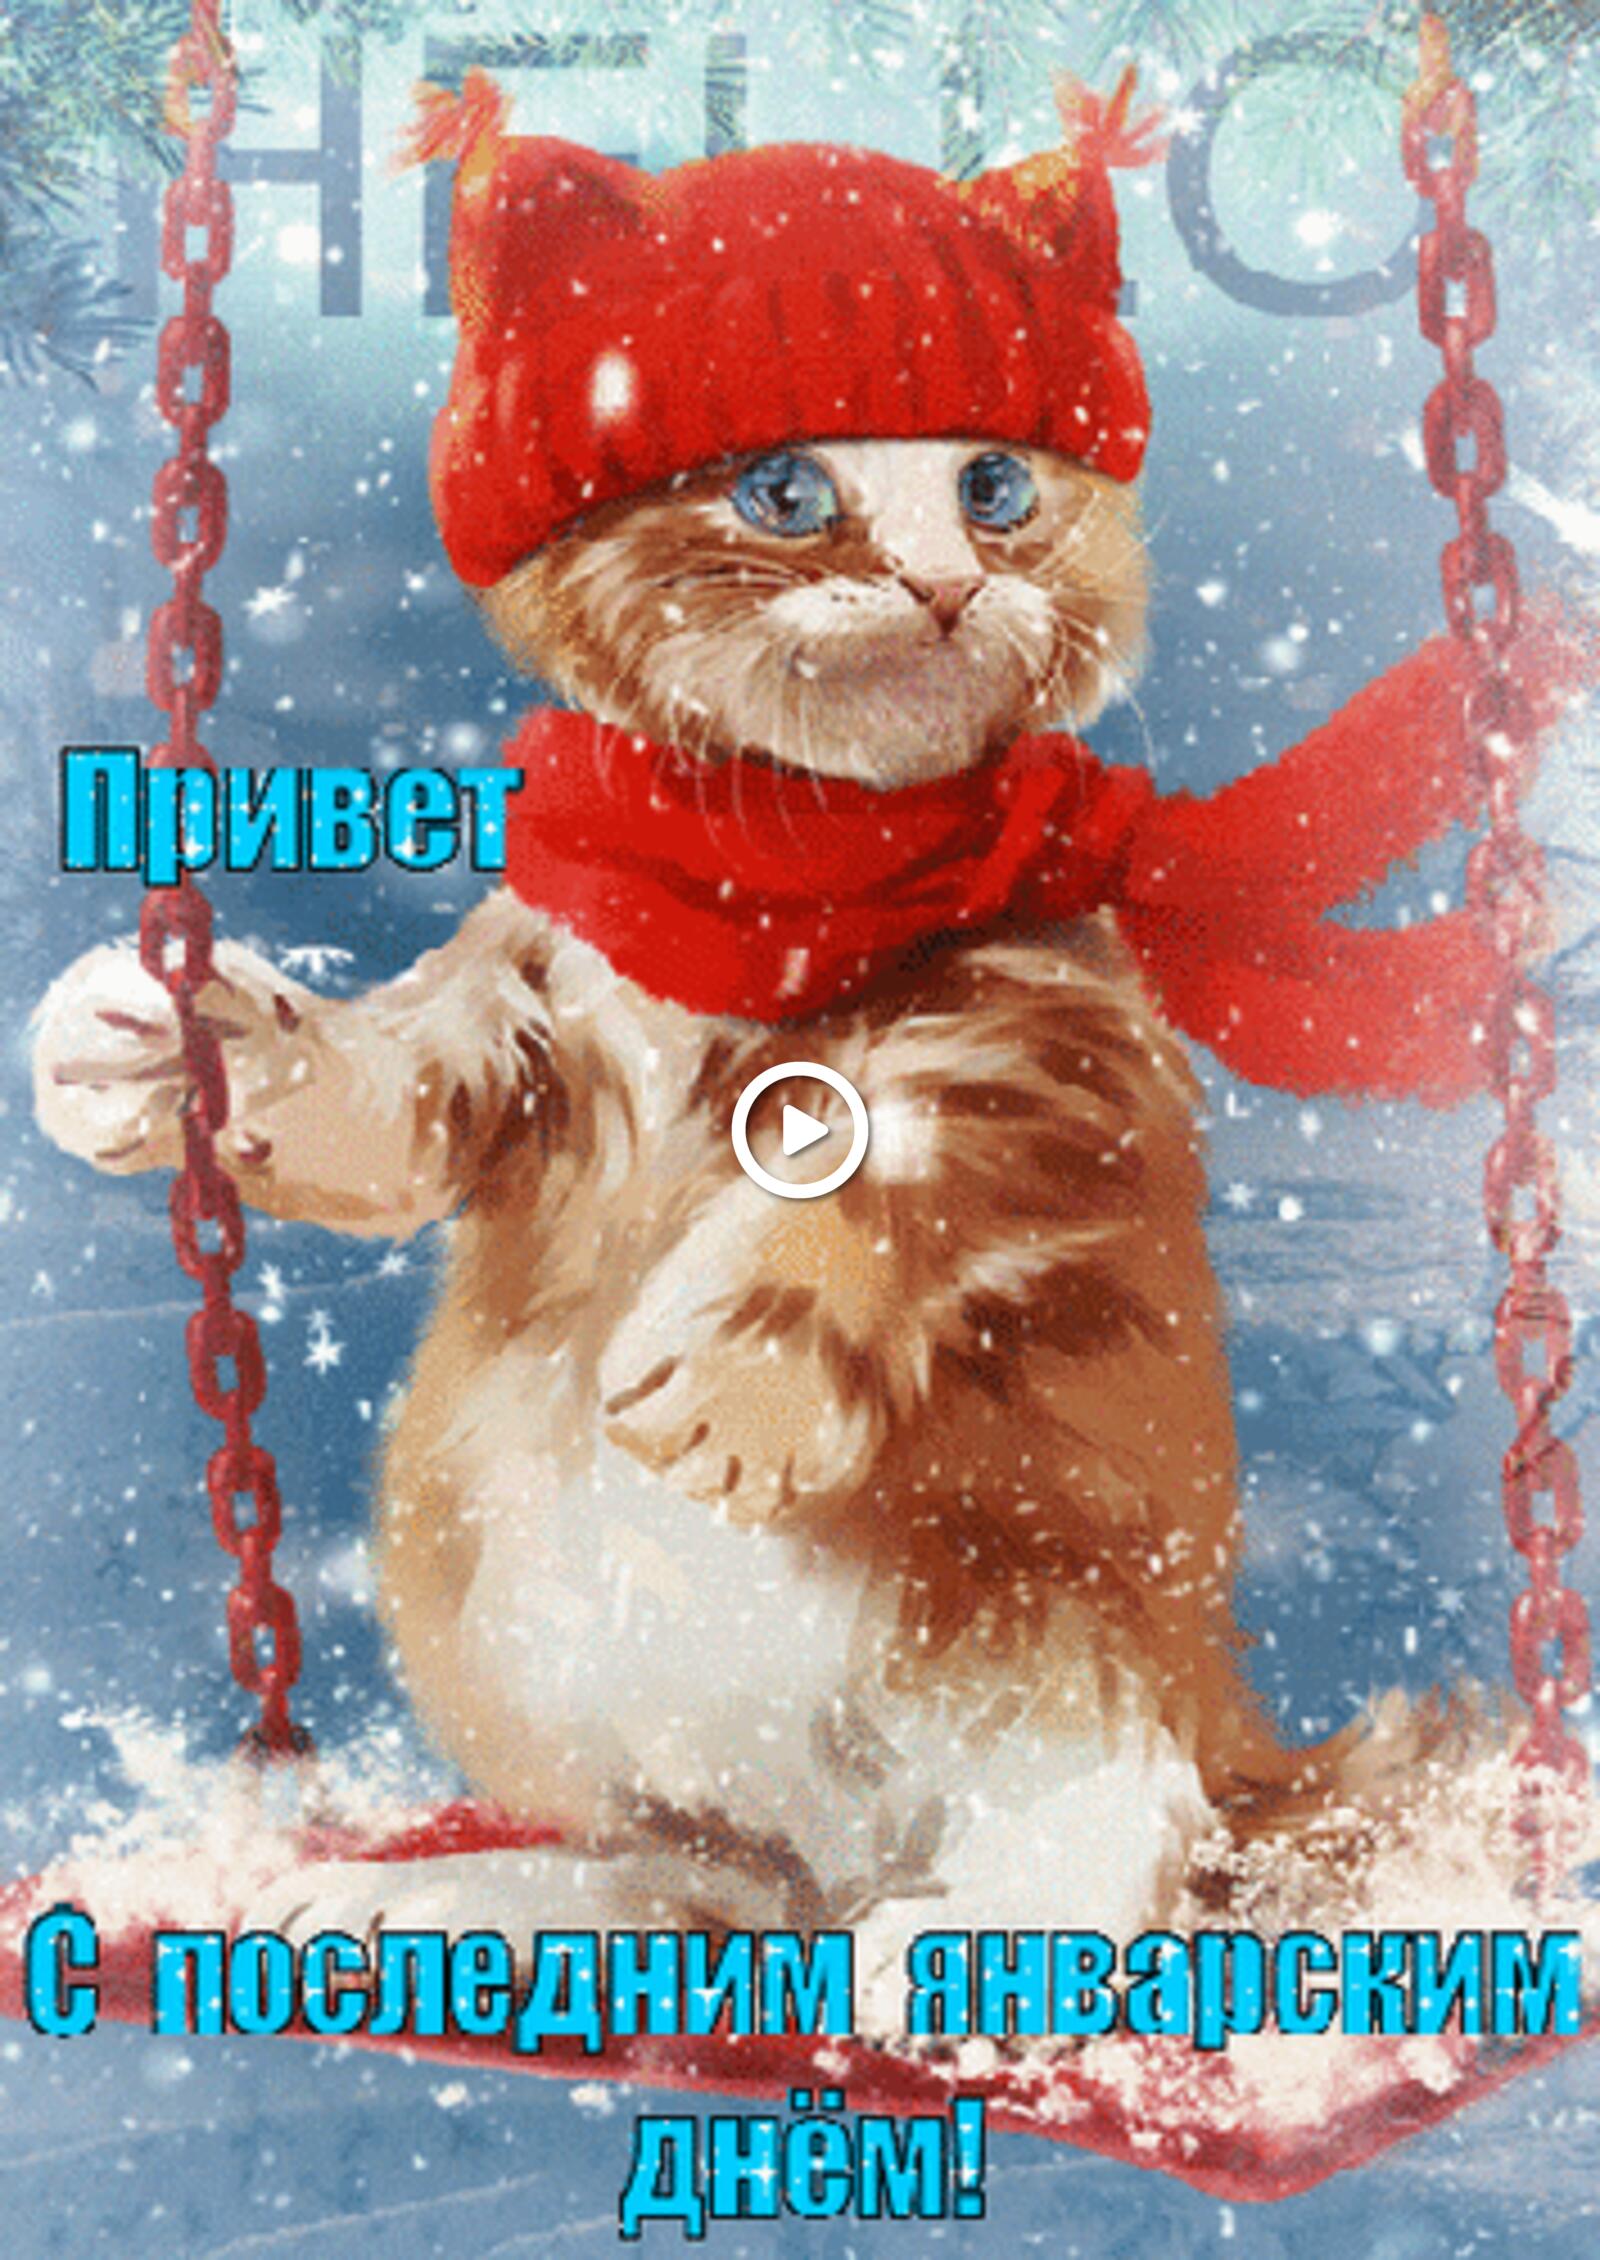 一张以一月的最后一天 新年快乐卡 小猫为主题的明信片